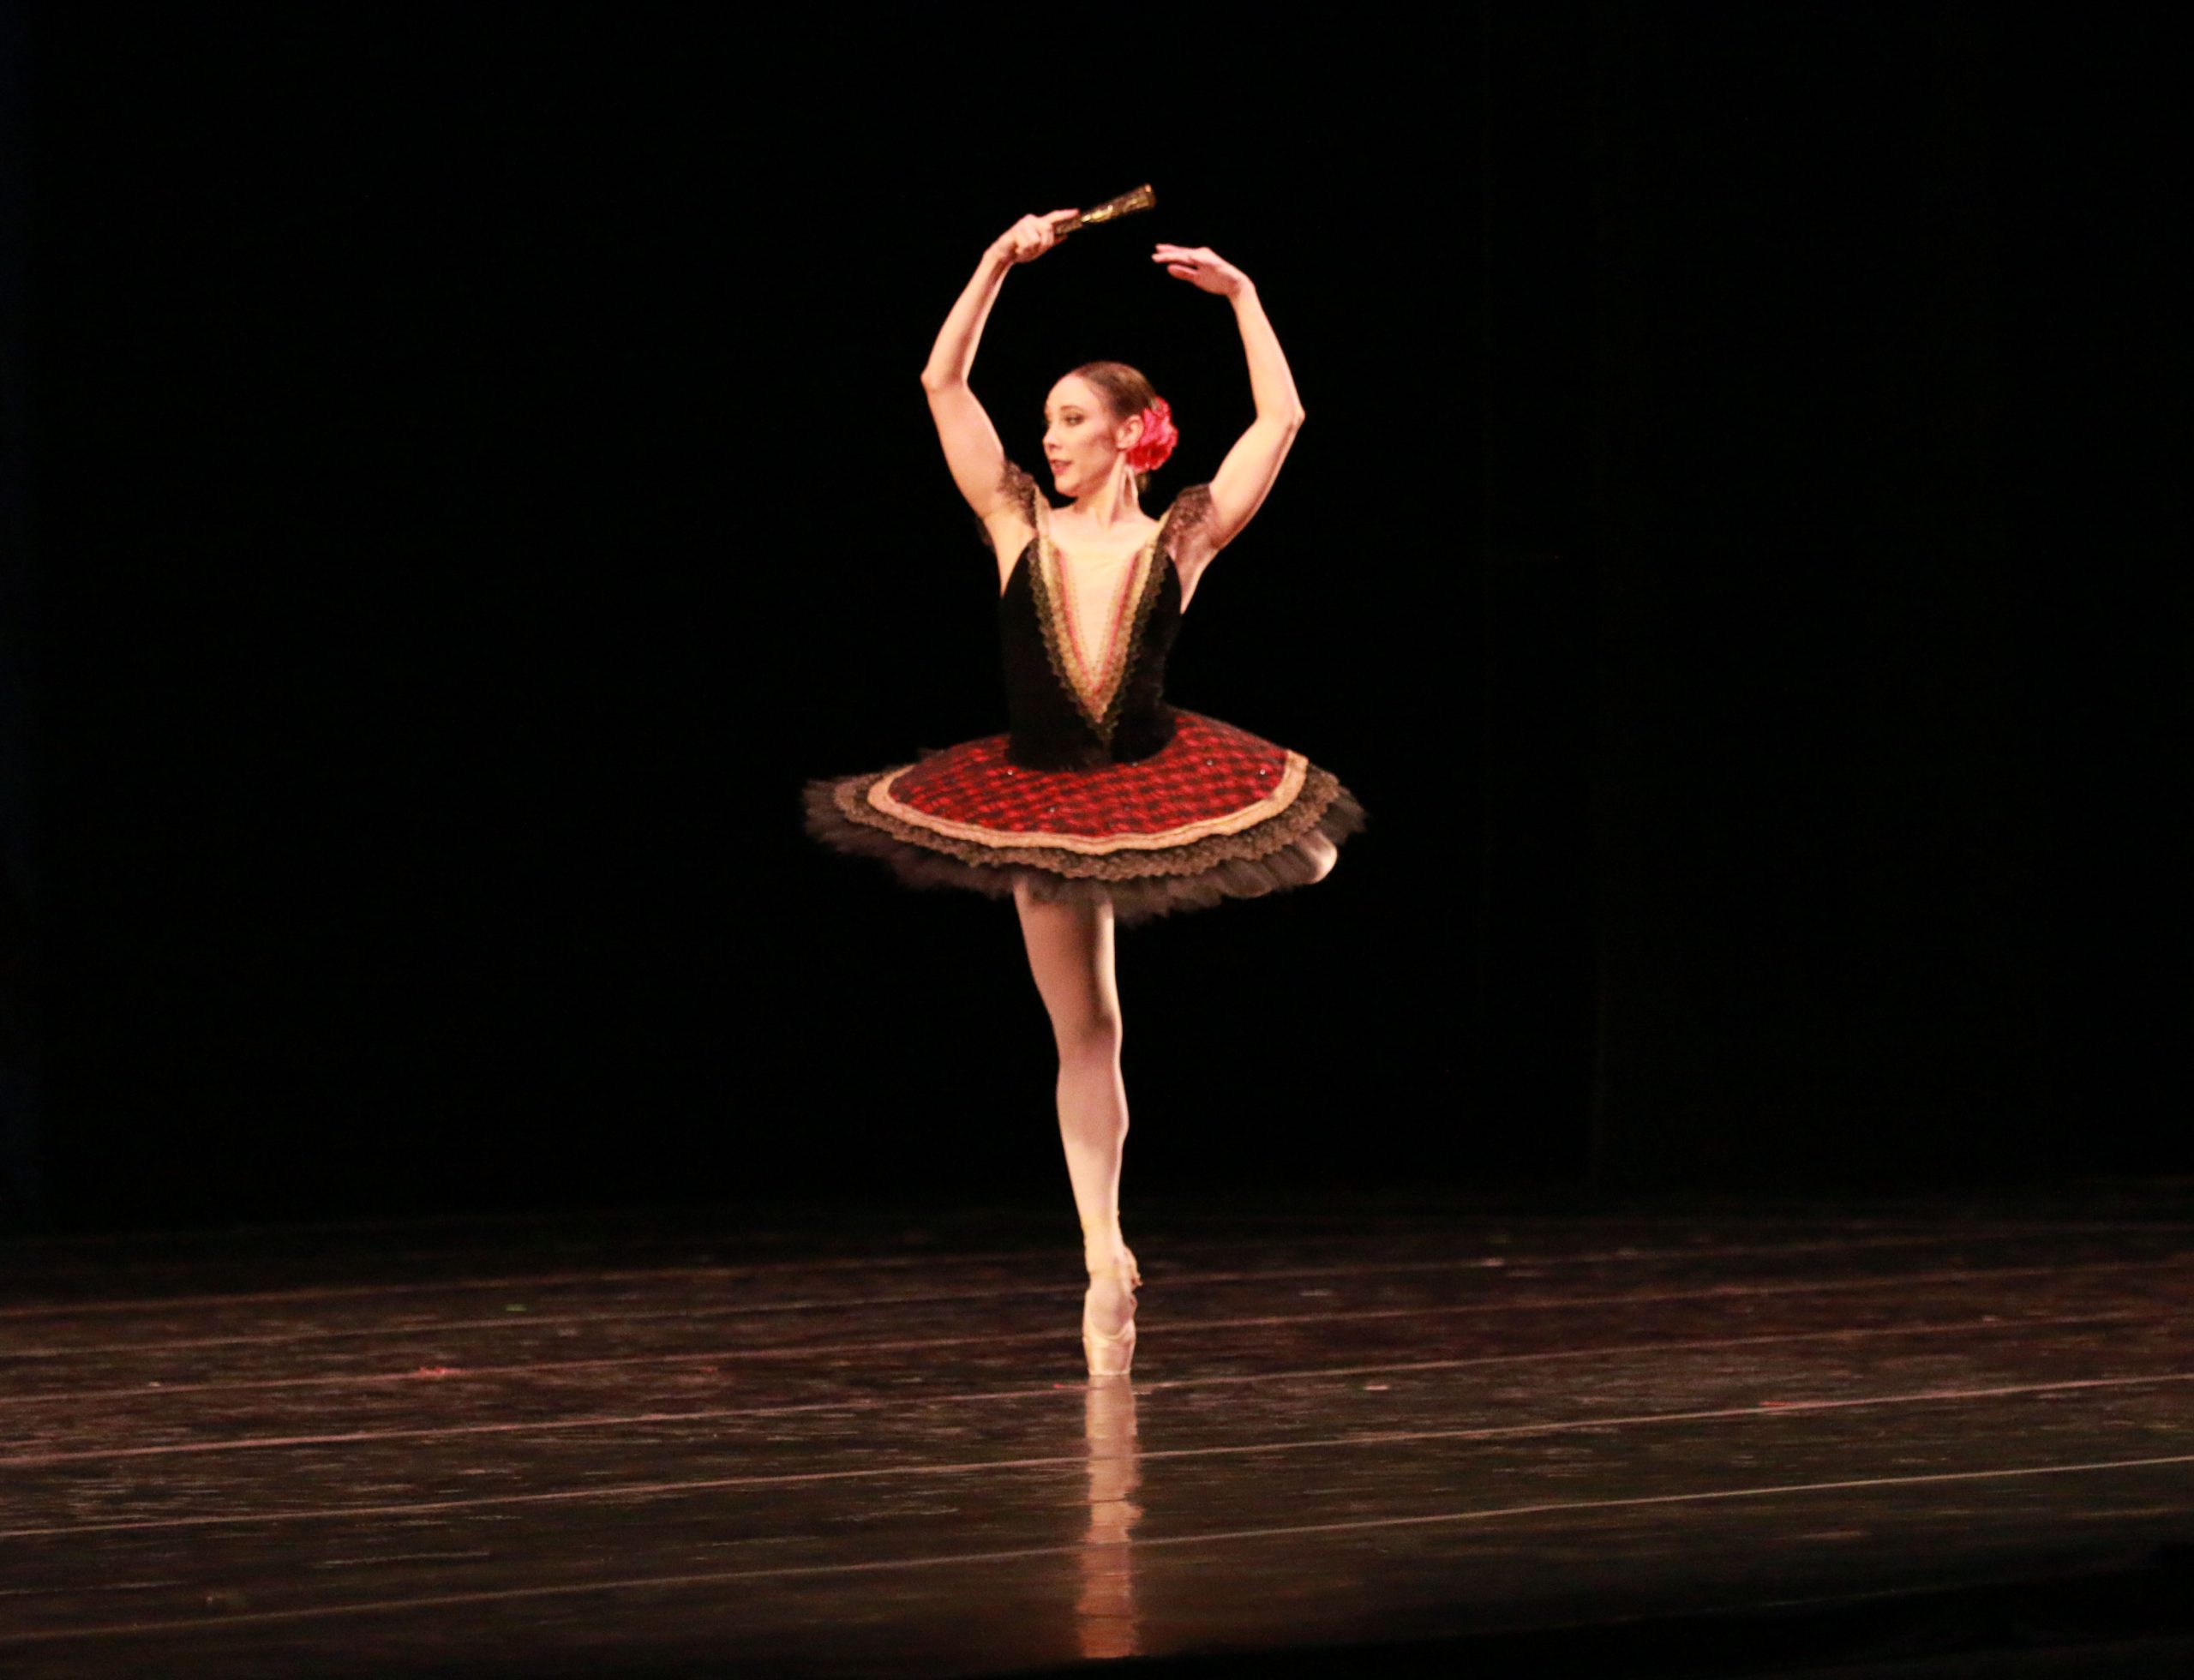 La bailarina Elisa Carrillo lleva el arte a nuevos horizontes